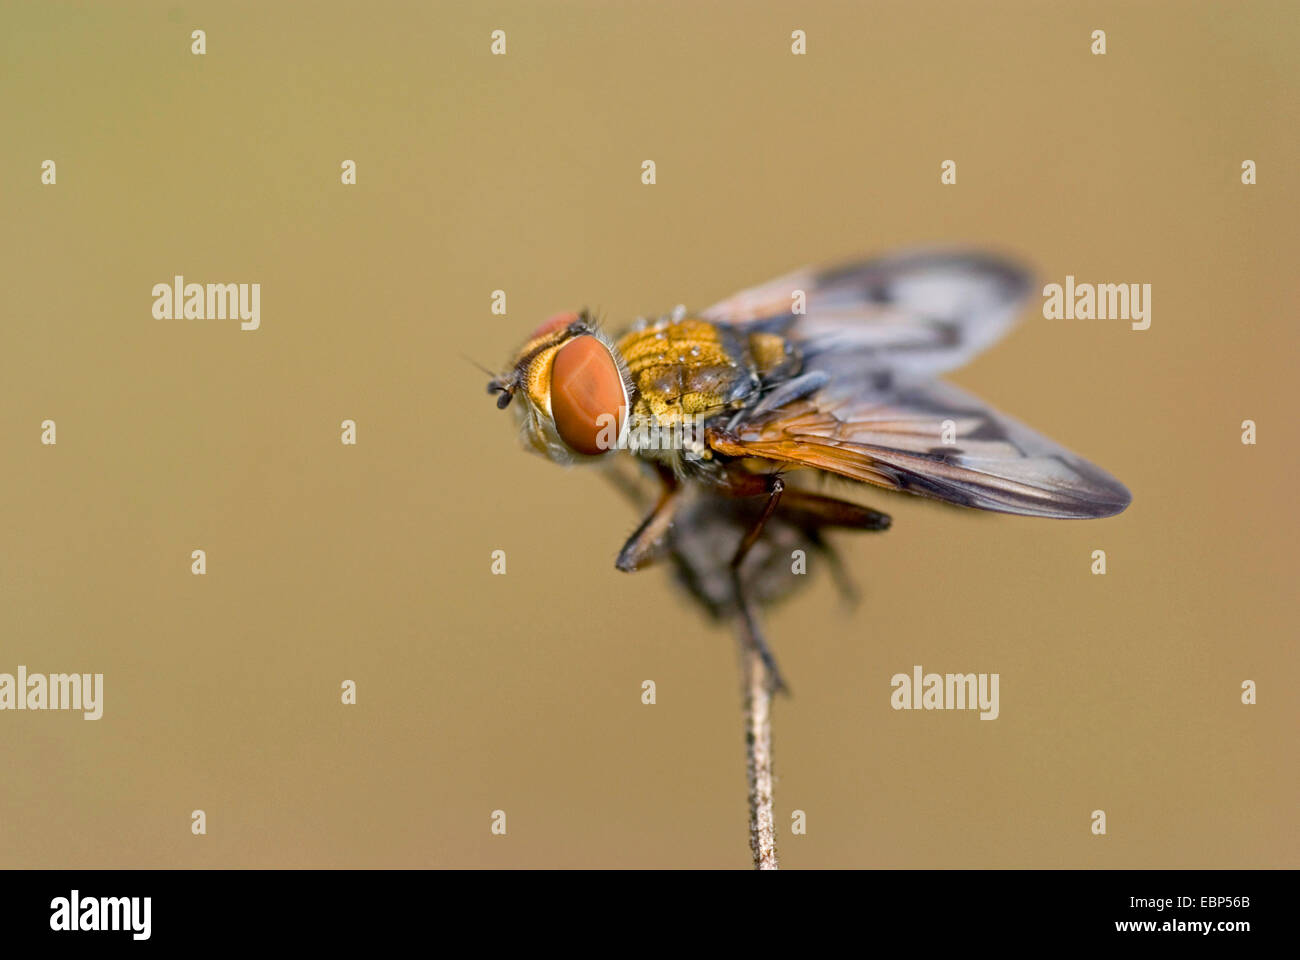 Parásito mosca, mosca Tachinid (Ectophasia crassipennis), sobre un tallo, Alemania Foto de stock